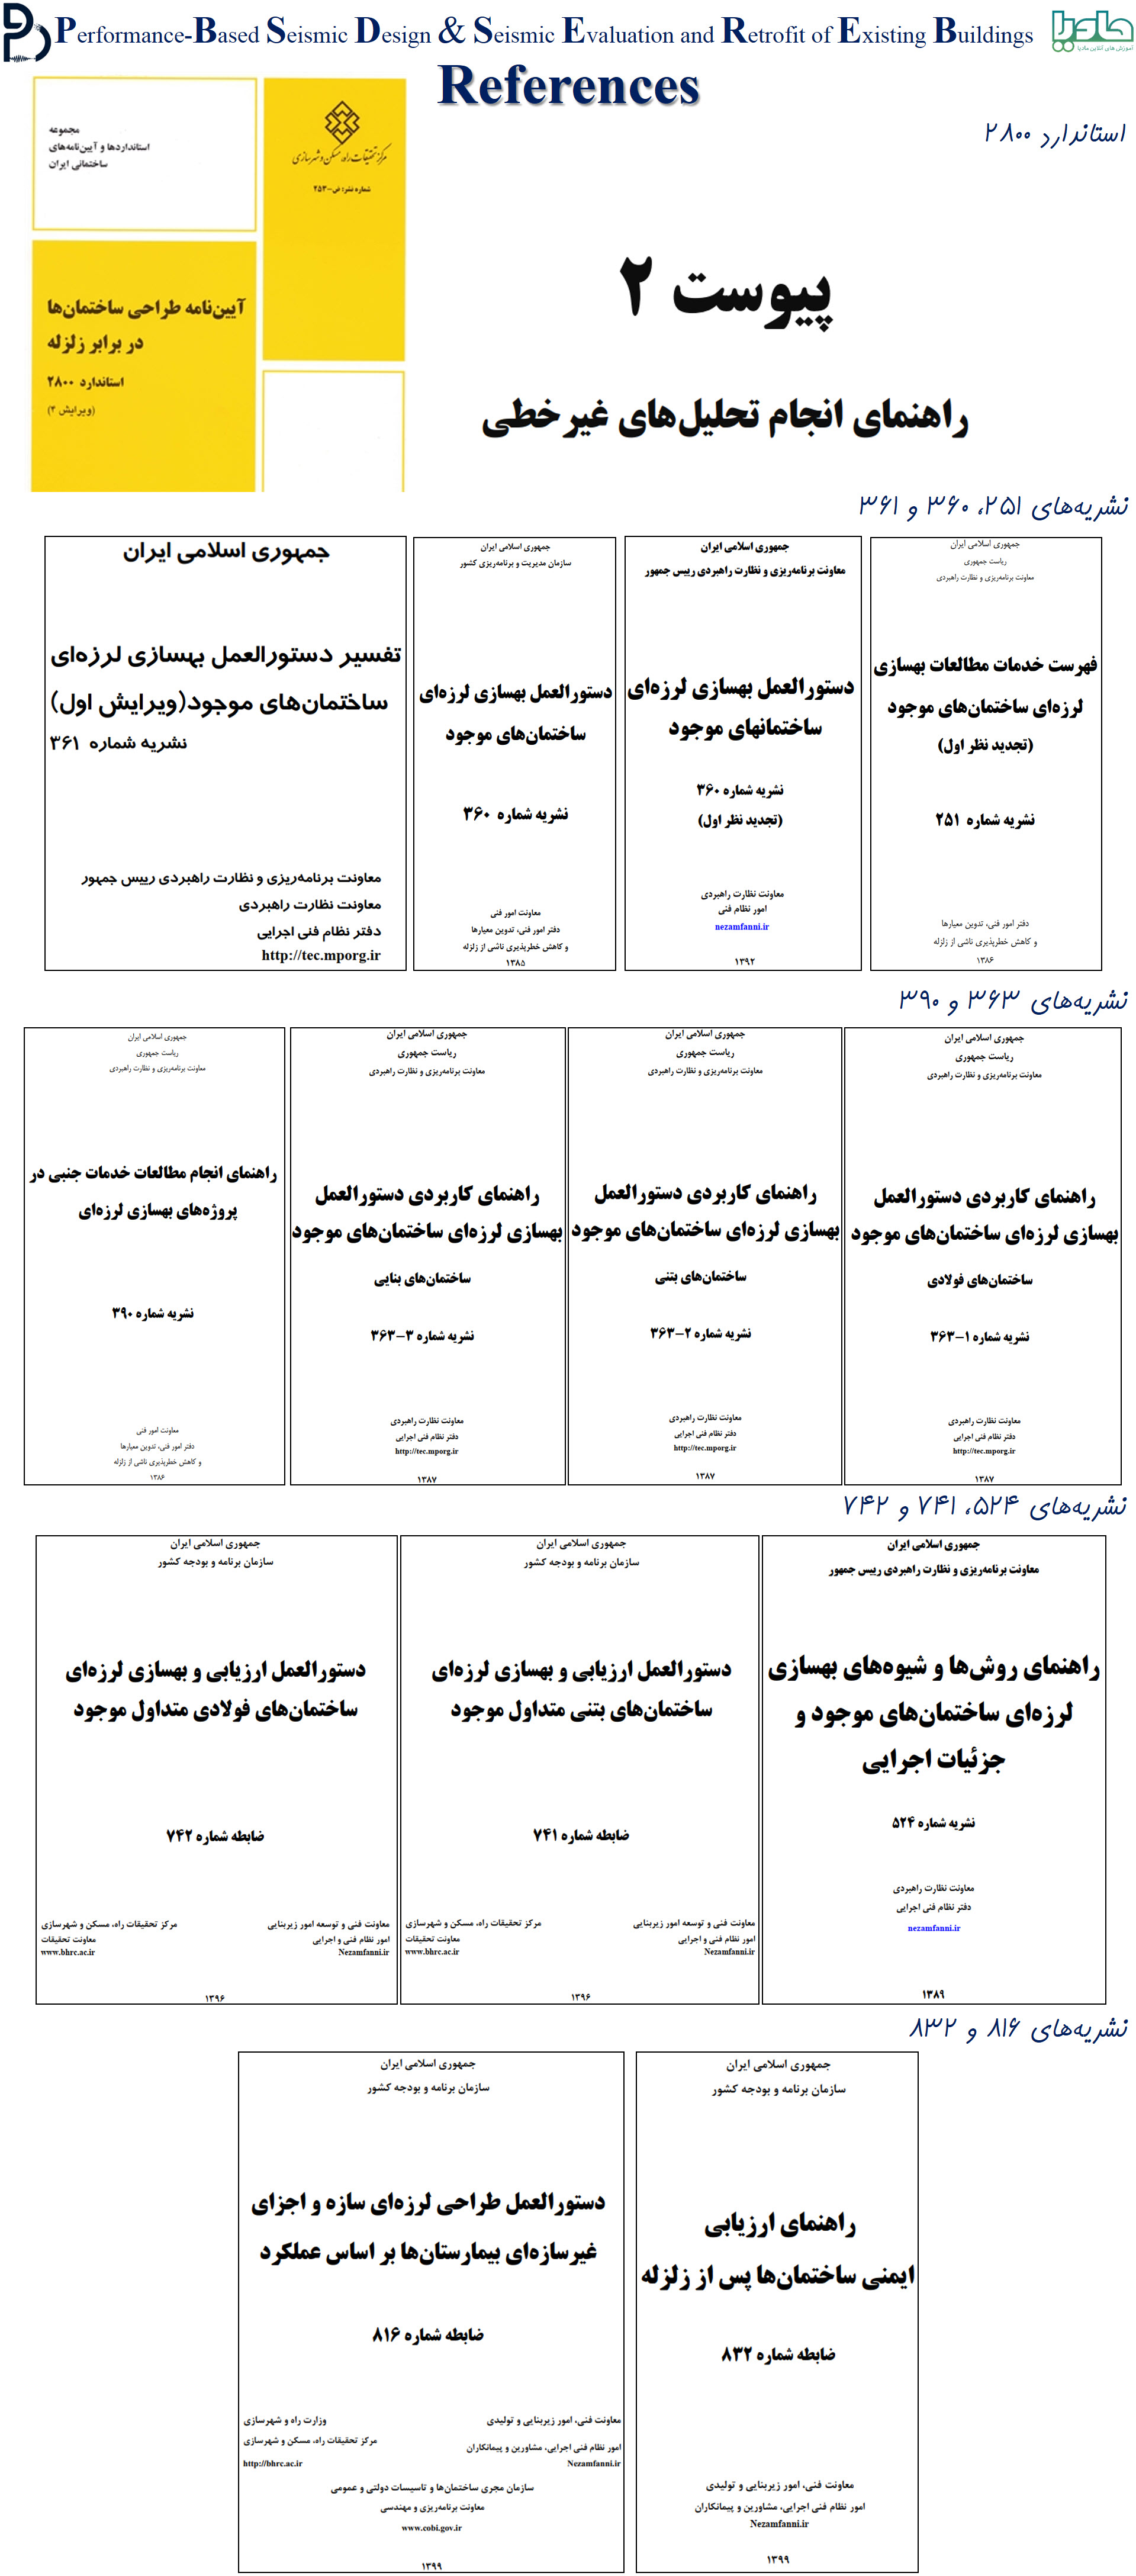 آئین نامه ها و دستورالعمل های بهسازی لرزه ای و طراحی عملکردی ایران